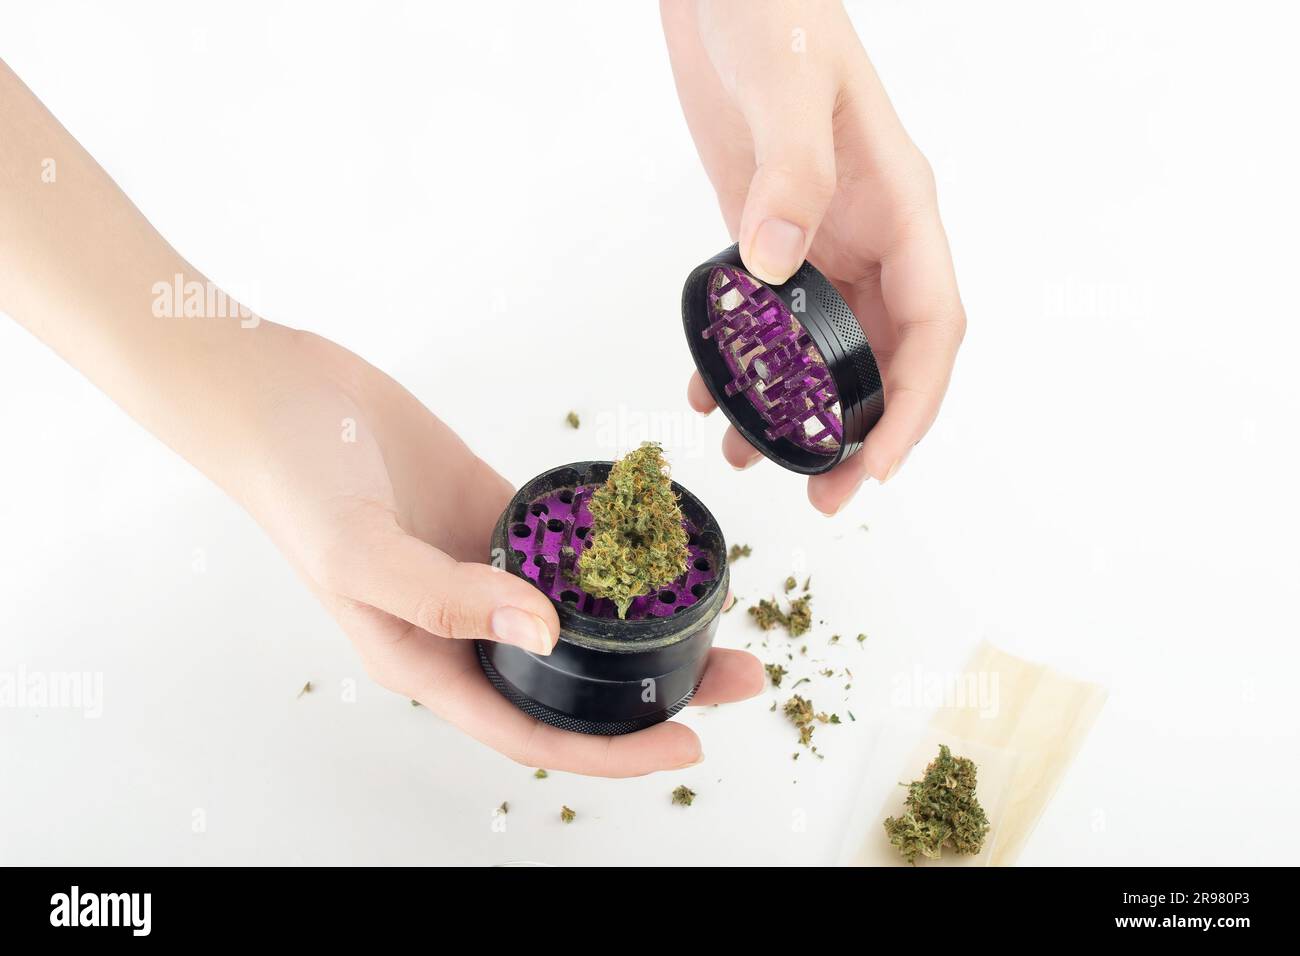 En manos femeninas, un grinder con un brote seco de marihuana medicinal. Las piezas de cannabis se dispersan sobre un fondo blanco, junto al papel para el joi Foto de stock